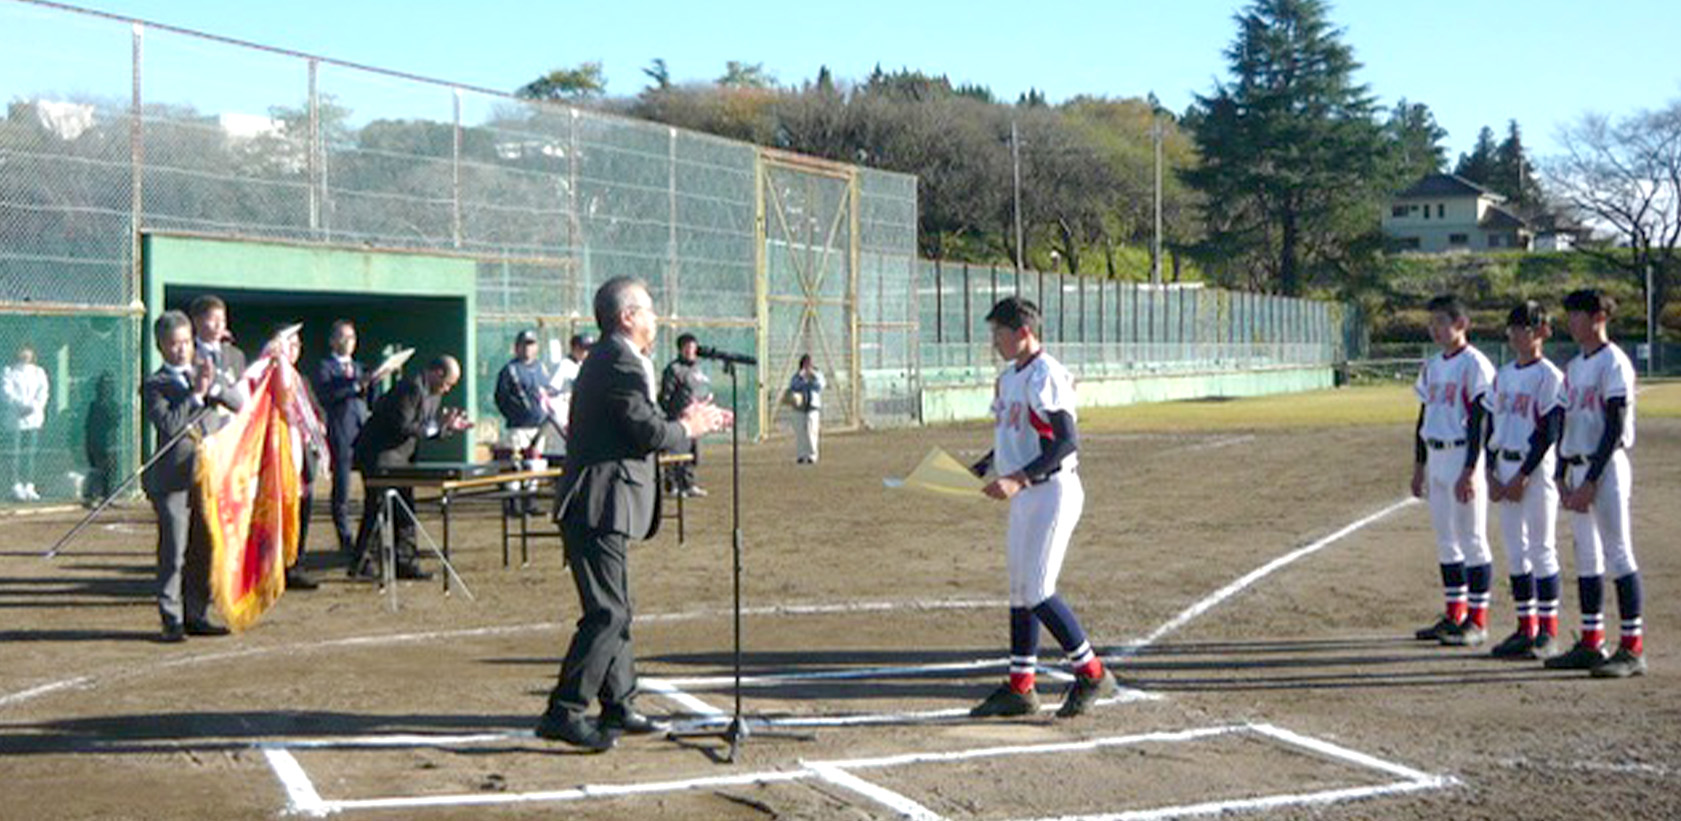 中学生野球大会「桜川市近隣中学校野球大会」